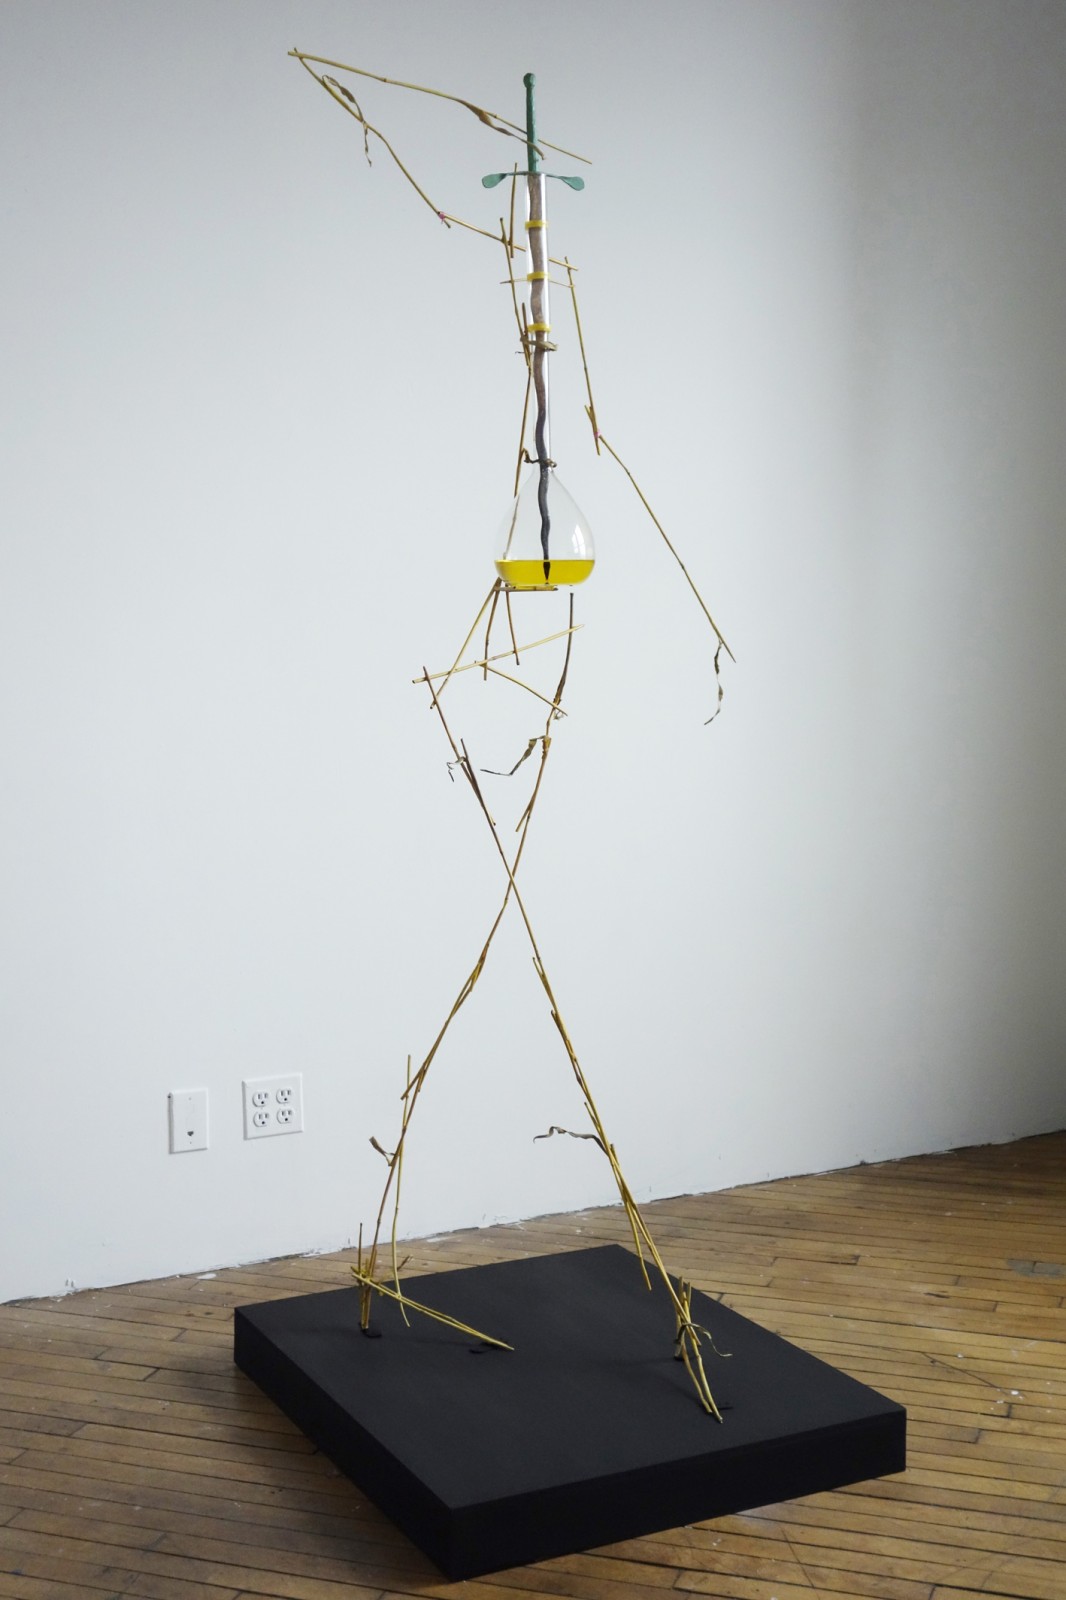 Olaf Brzeski, Krissy Kocktail, 2014-2015, ok. 60 x 60 x 190 cm, polerowany brąz, stal, szkło, kwas solny, farba olejna, źródło: Galeria Raster w Warszawie 